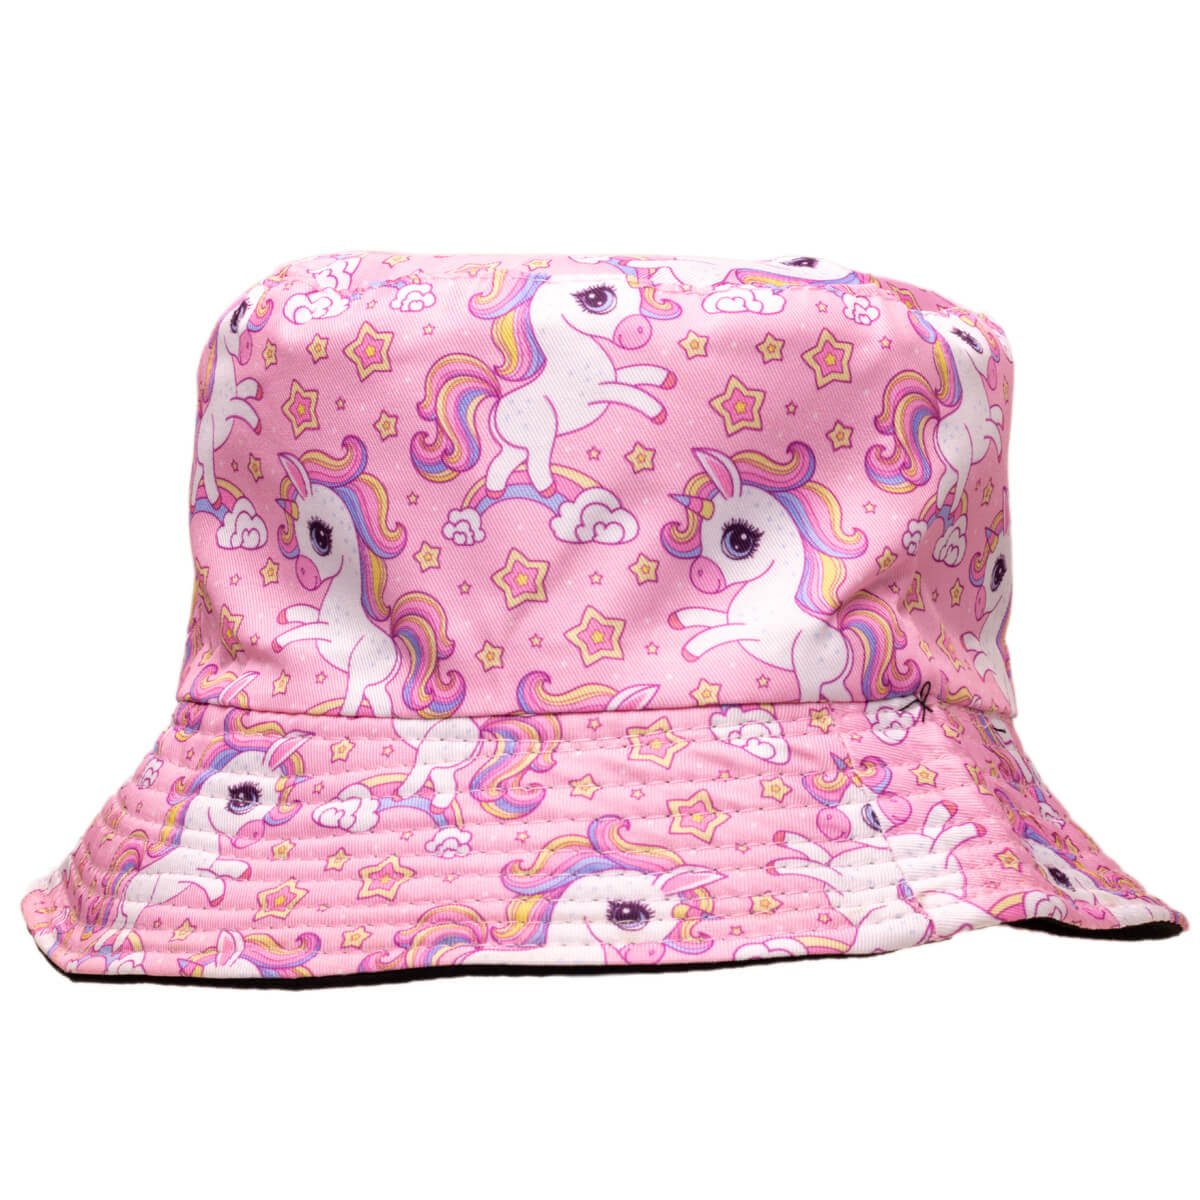 Children's summer hat - unicorn fishing hat for kids 12,99€